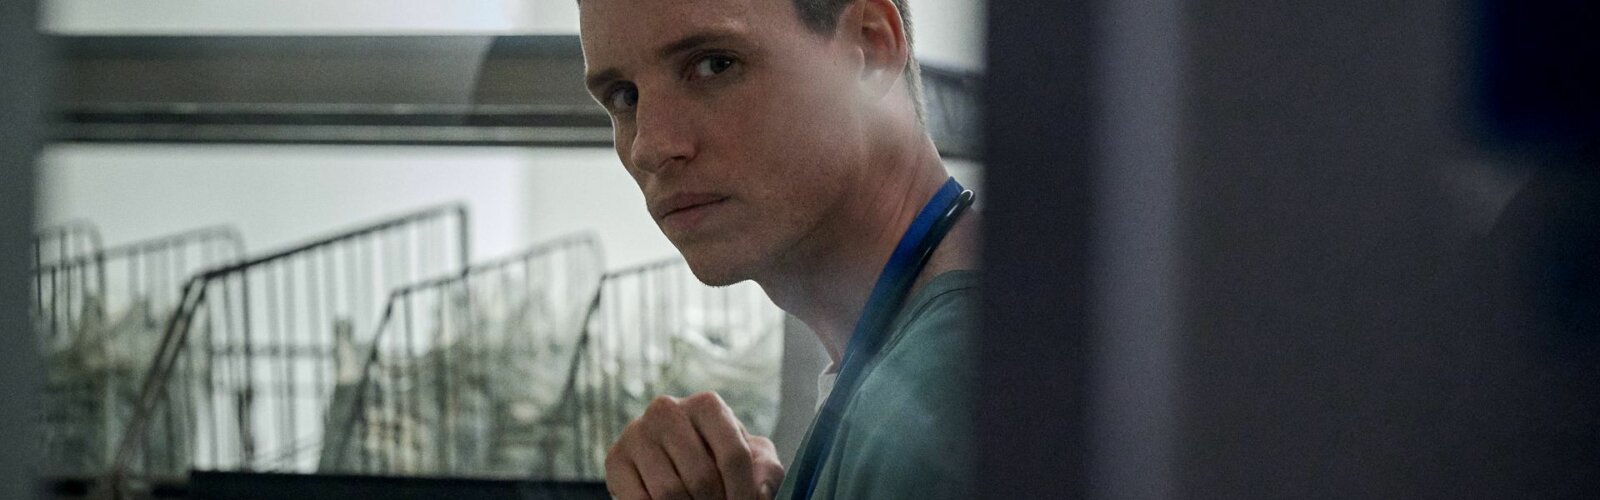 Eddie Redmayne als Serienmörder und Krankenpfleger Charles Cullen im Netflix-Film "The Good Nurse".